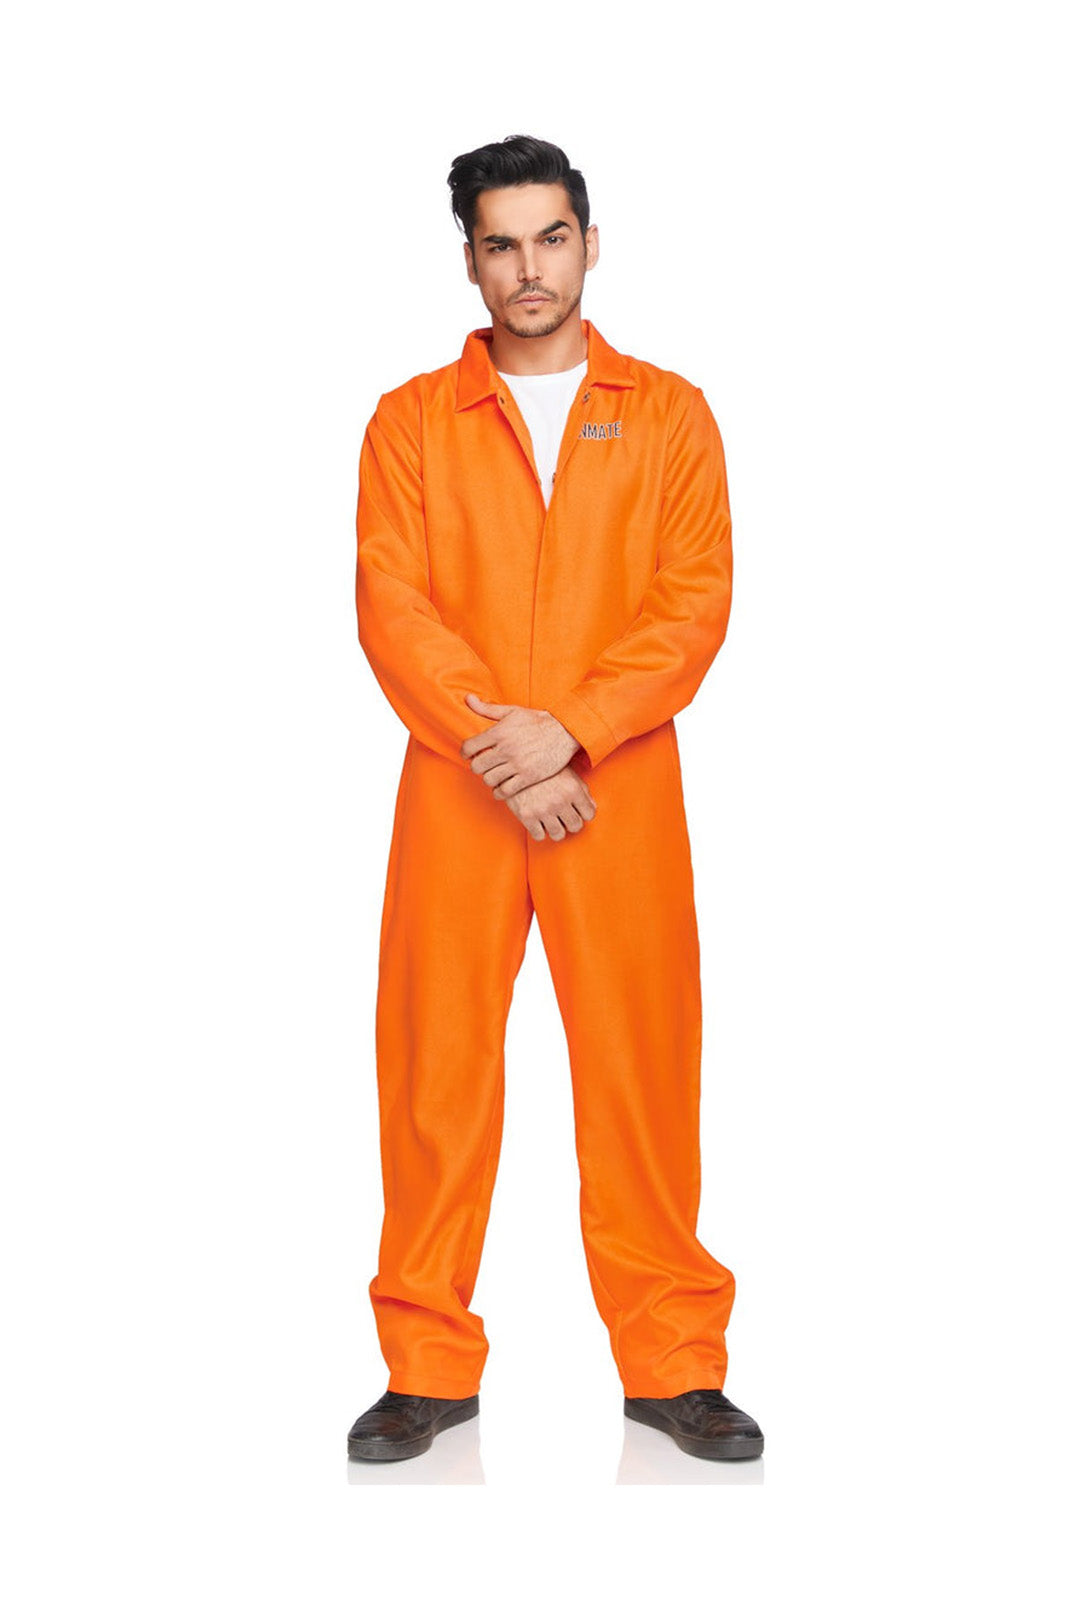 Men's Orange State Prison Costume